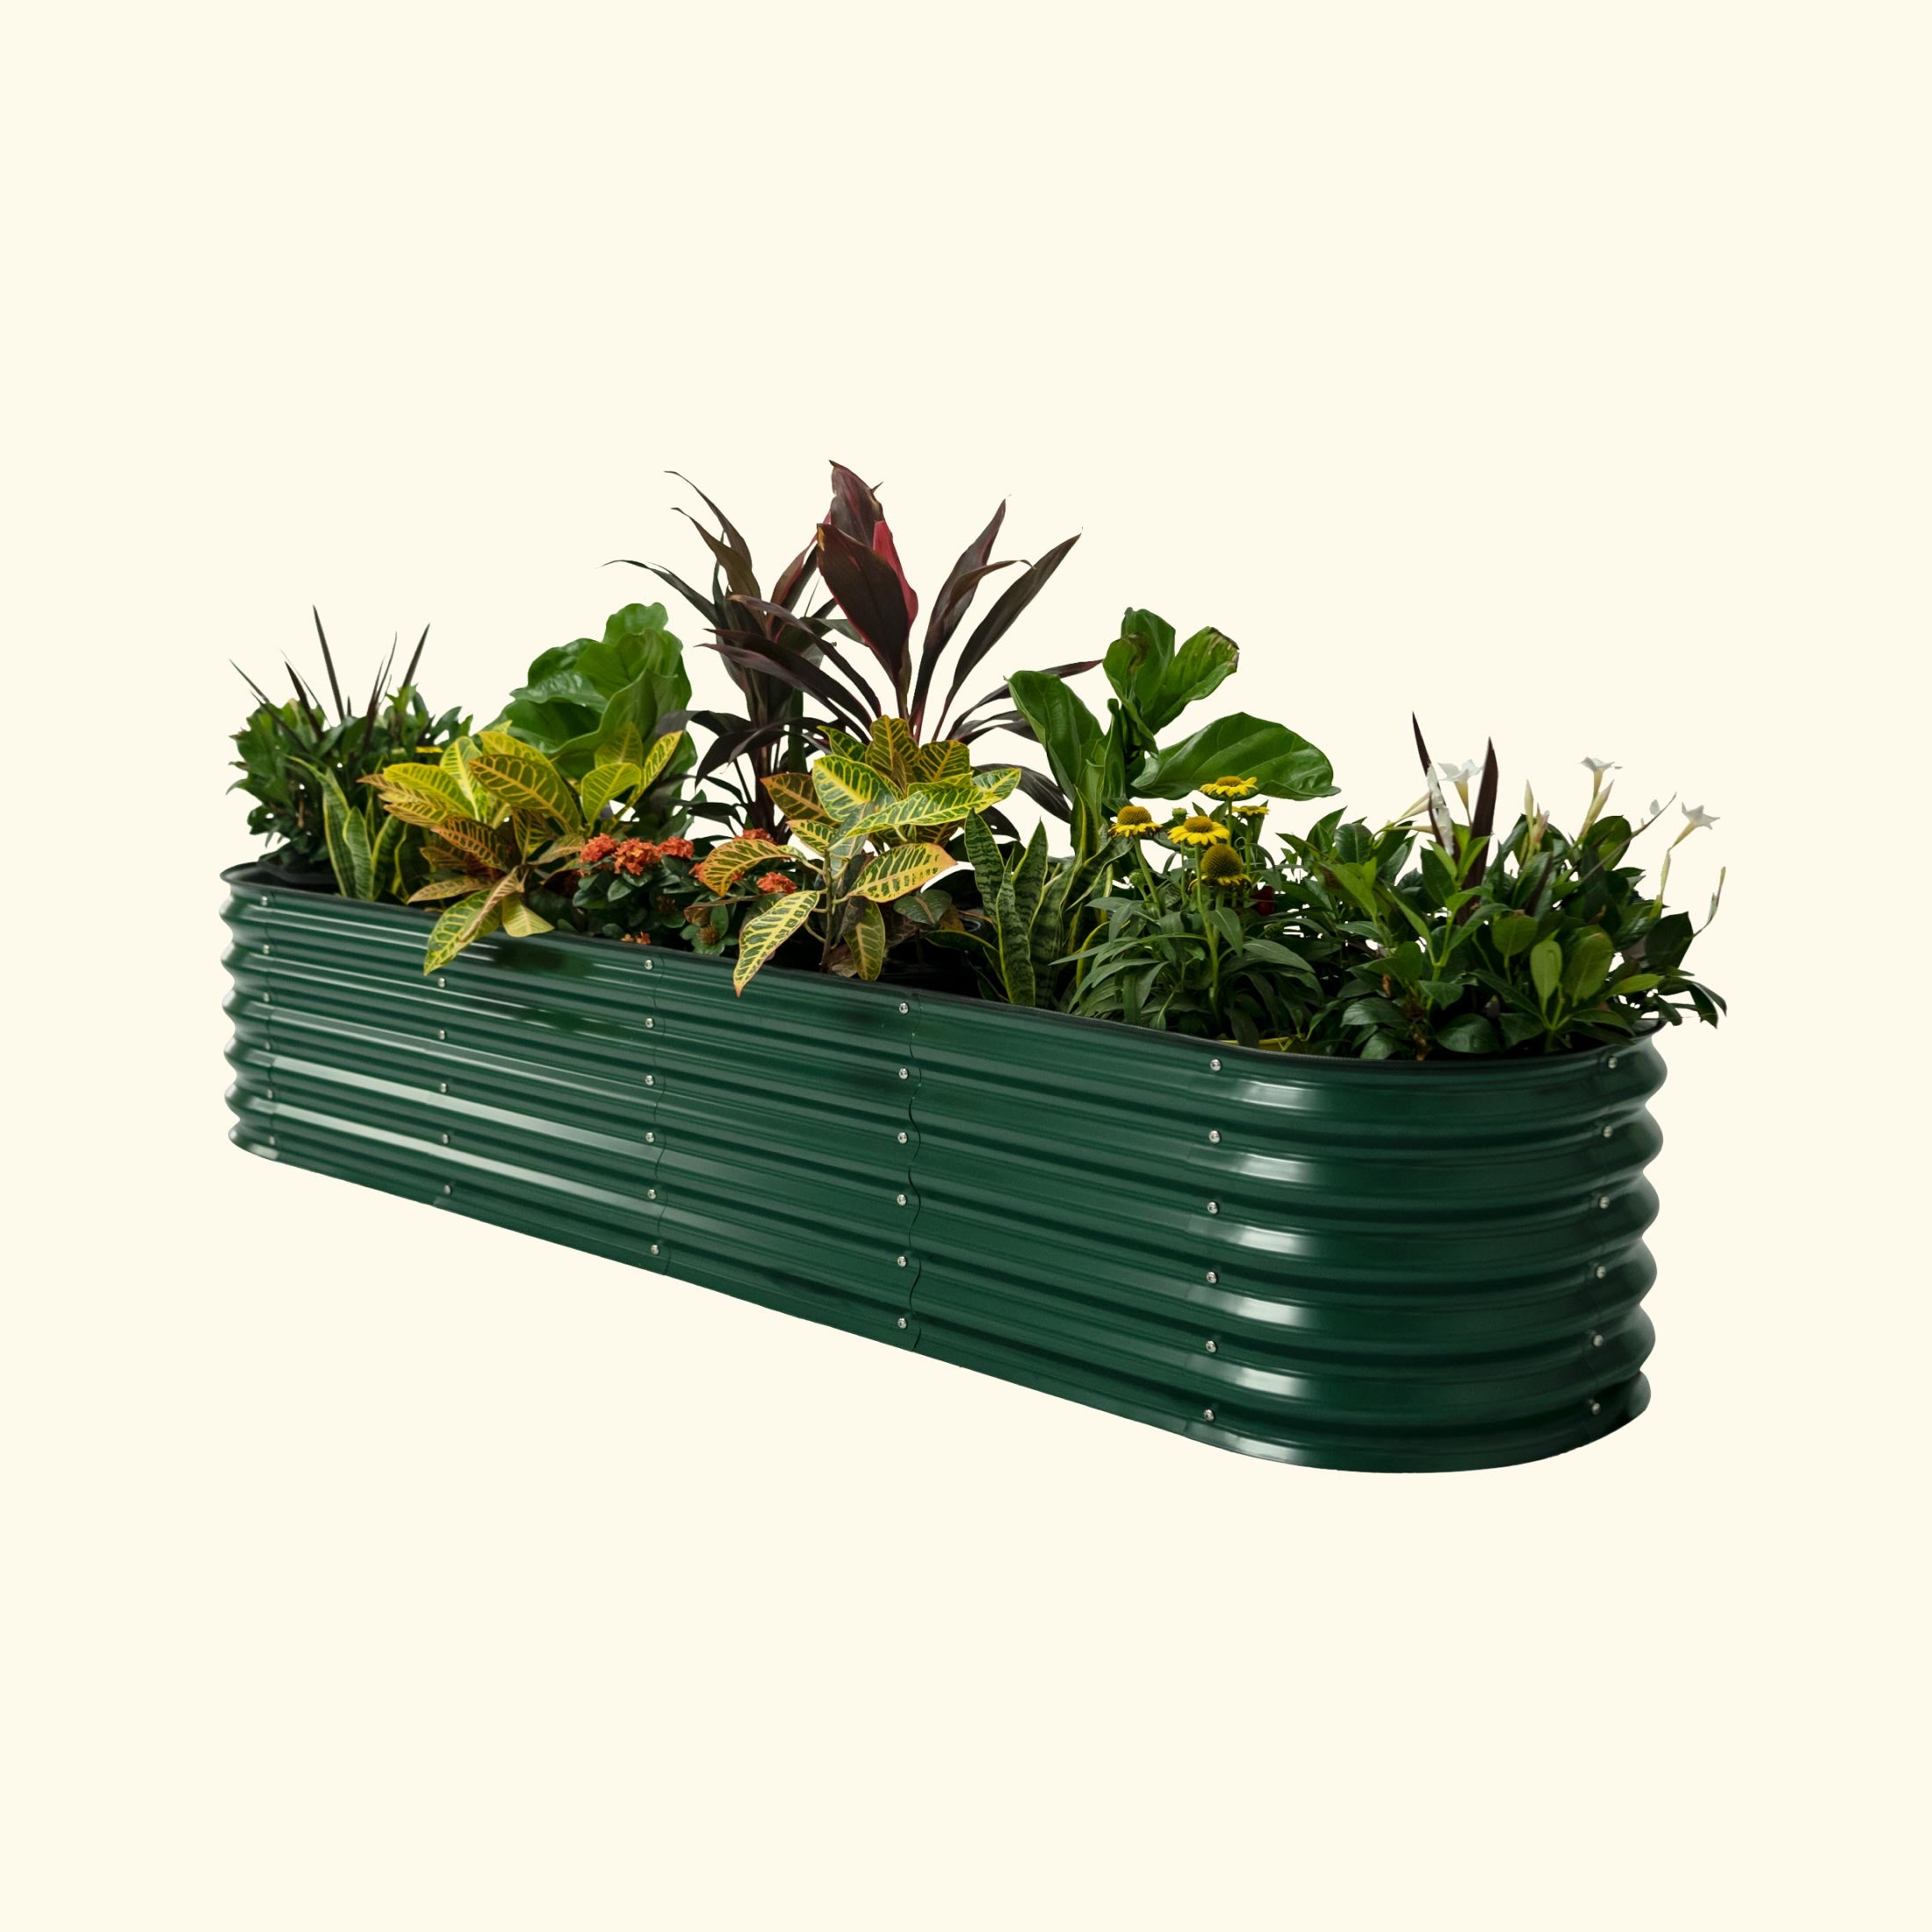 Vego Garden | Self Watering Bed British Green